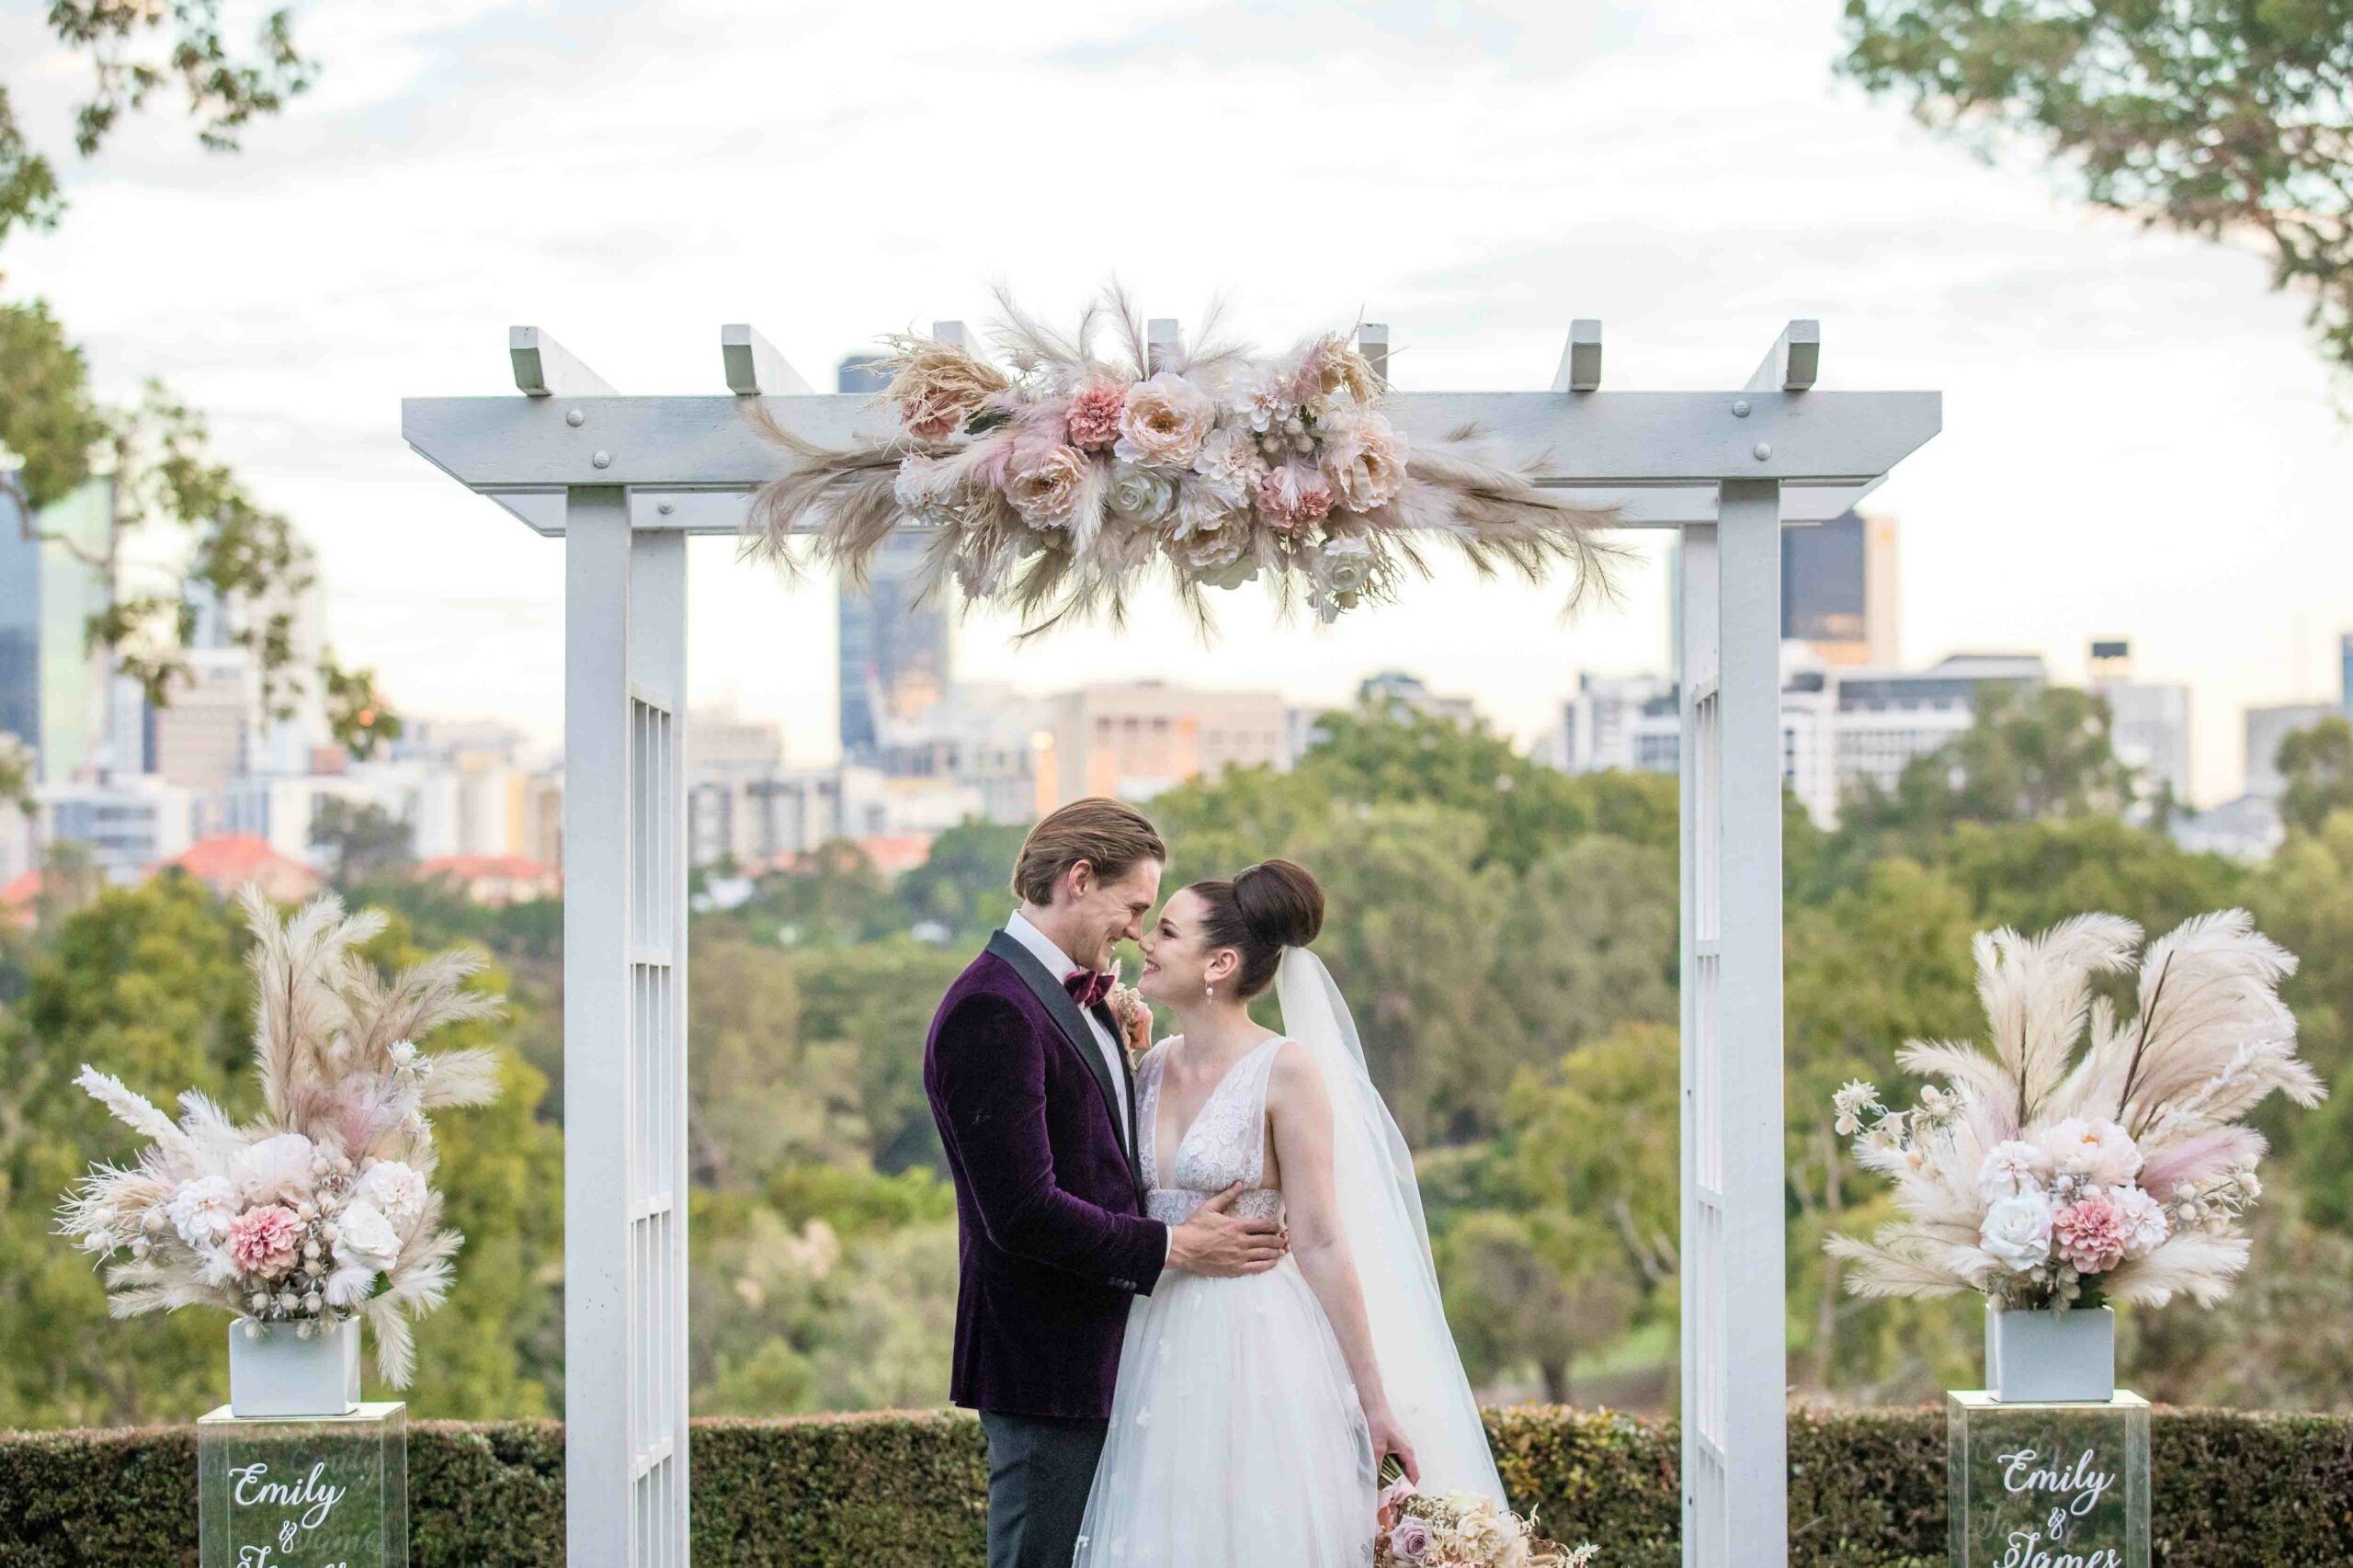 Victoria Park, Brisbane, Weddings, Brisbane Weddings, Wedding Season, Brisbane Weddings, Day In The Life Of A Wedding Planner, Wedding Planner